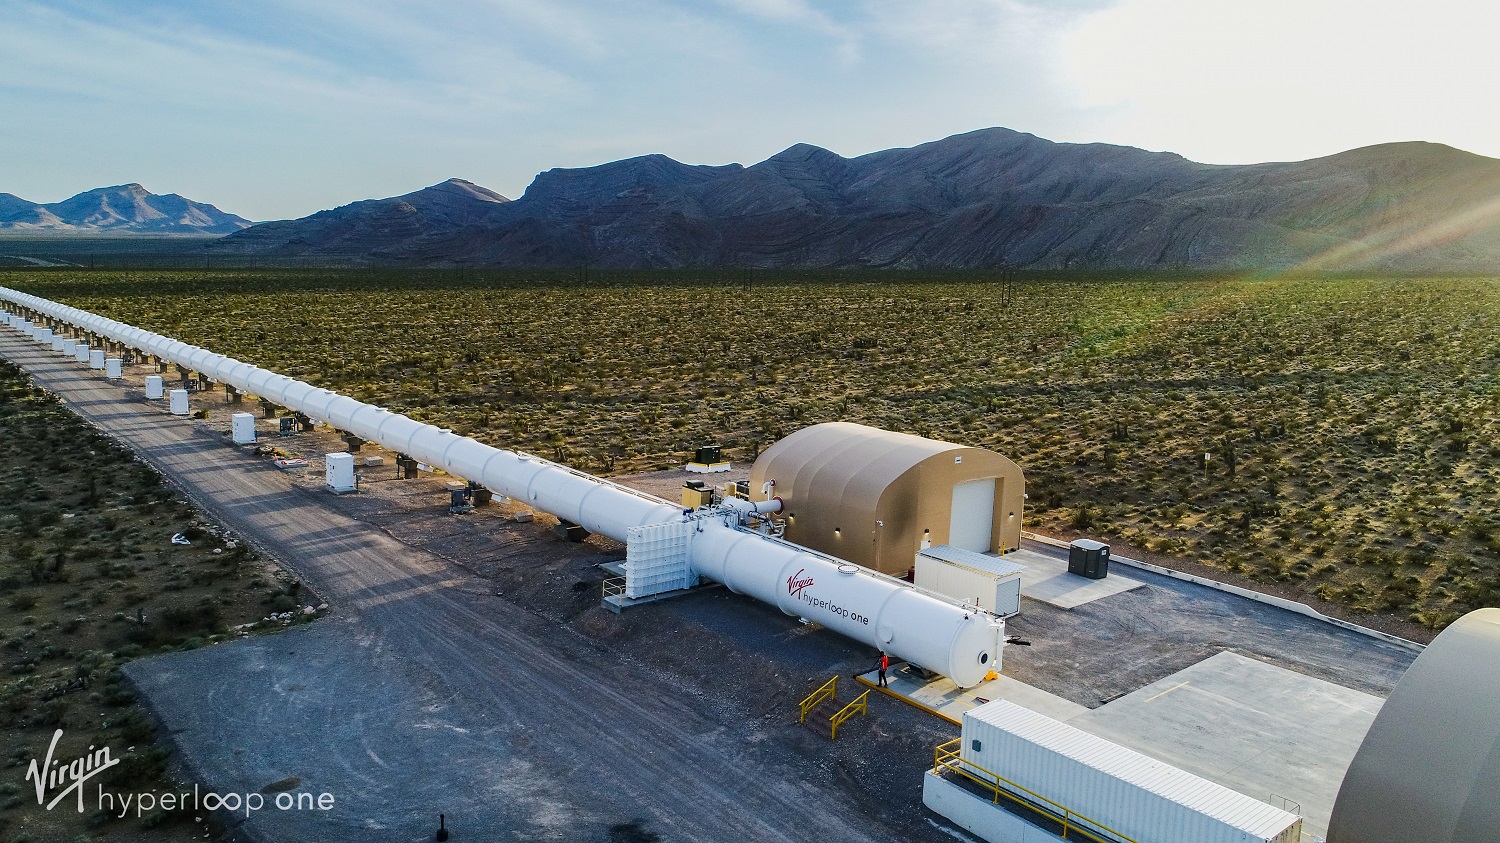 Saudi Arabia’s Virgin Hyperloop One project to create over 120,000 jobs